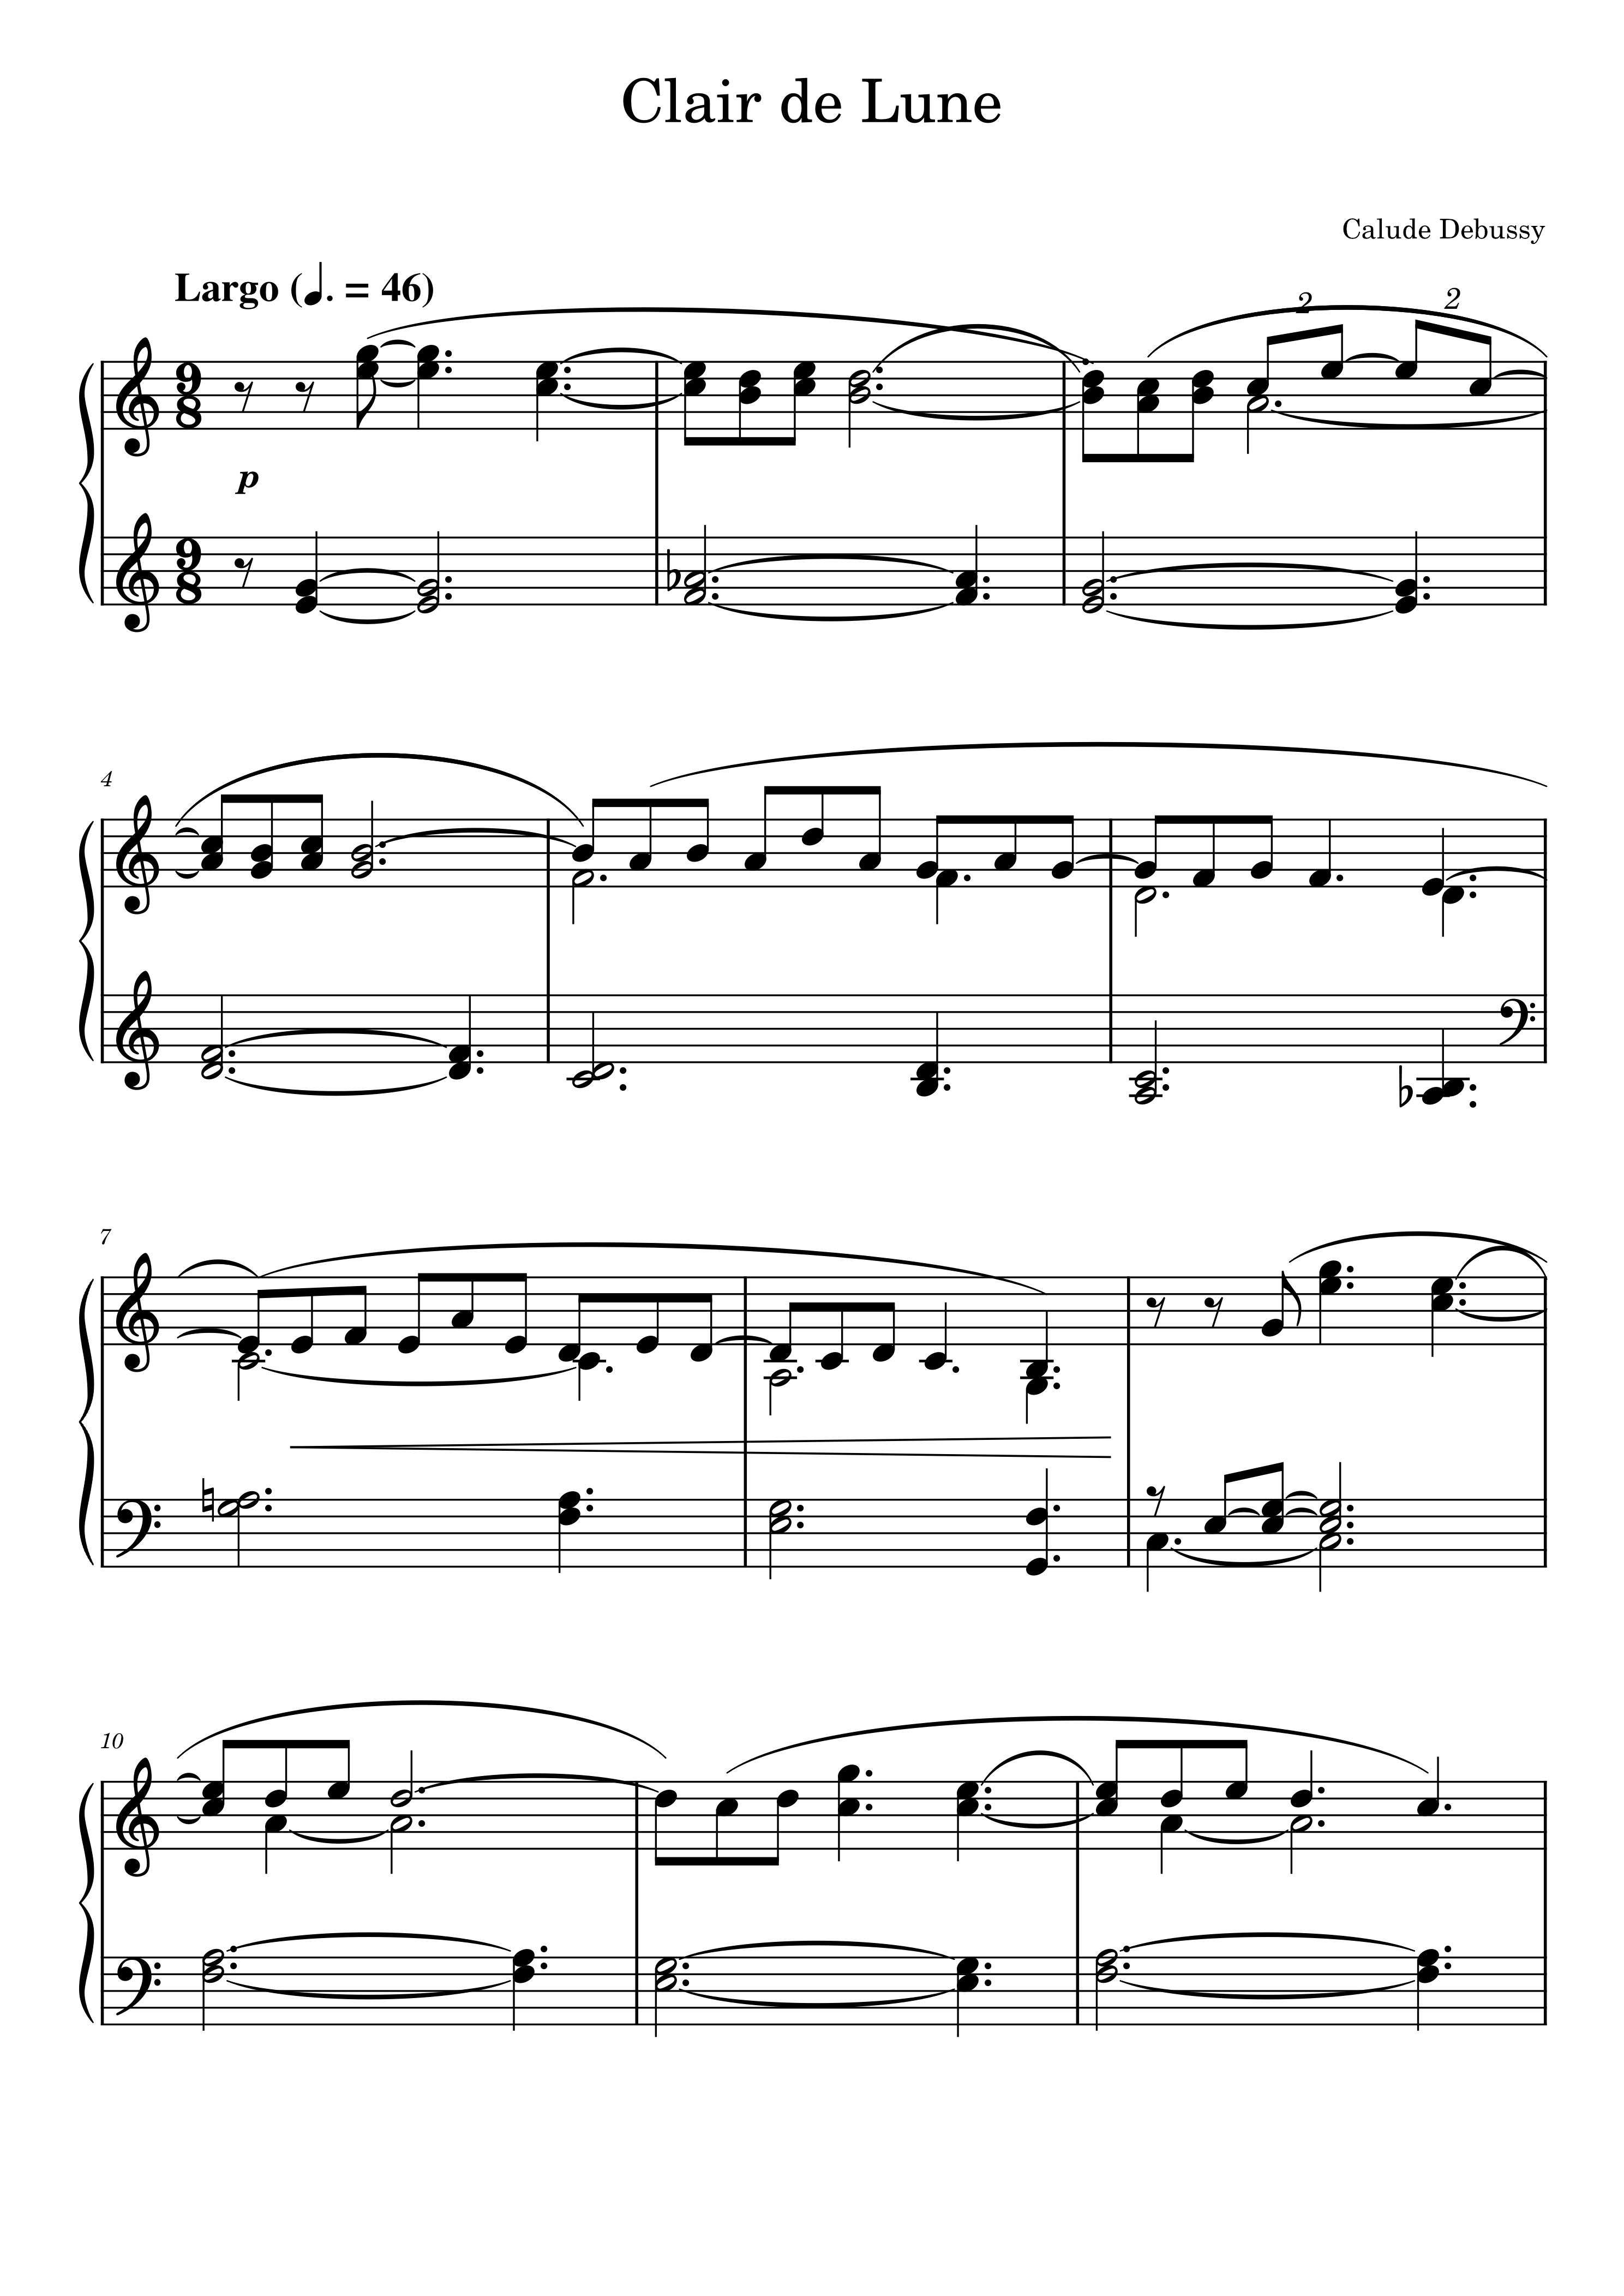 德彪西月光钢琴谱pdf图片